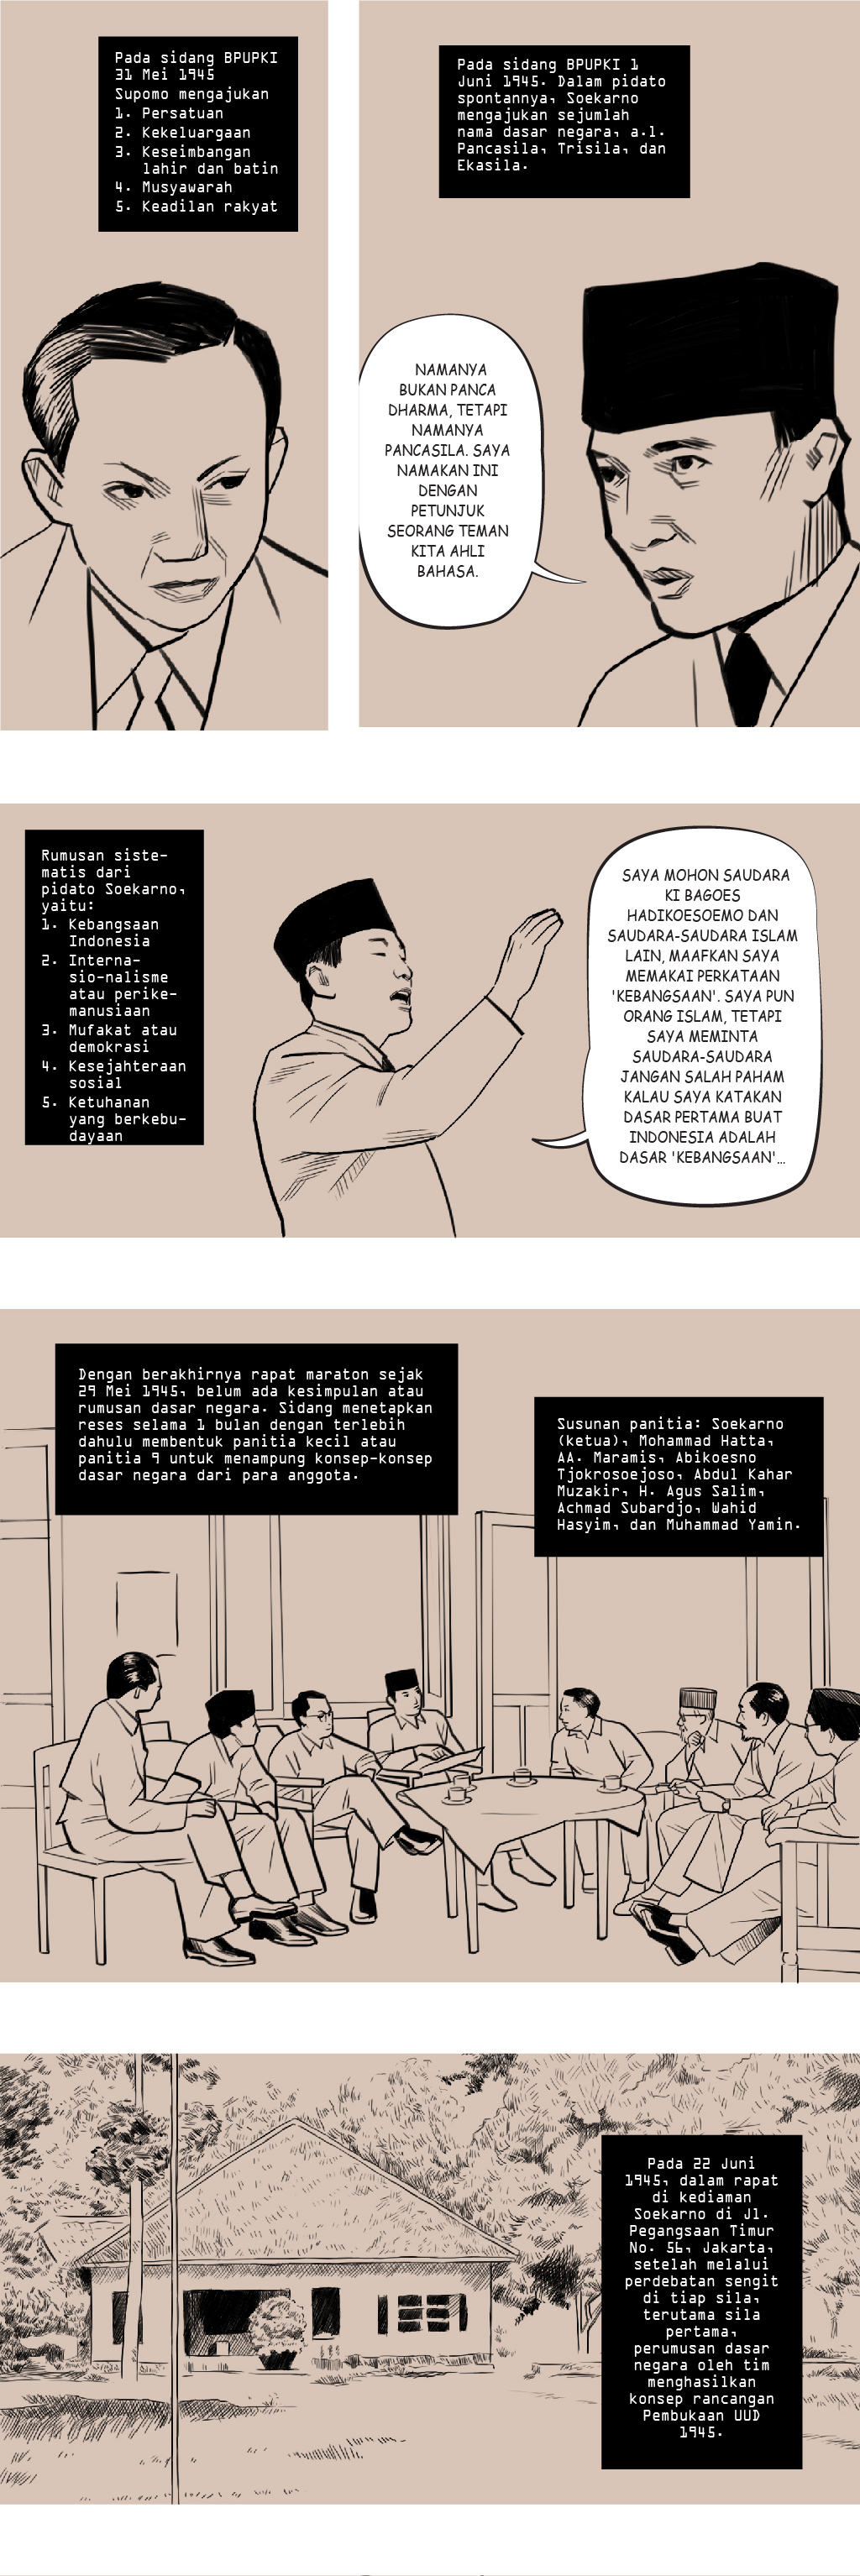 Pidato Soekarno Lahirnya Pancasila Pigura